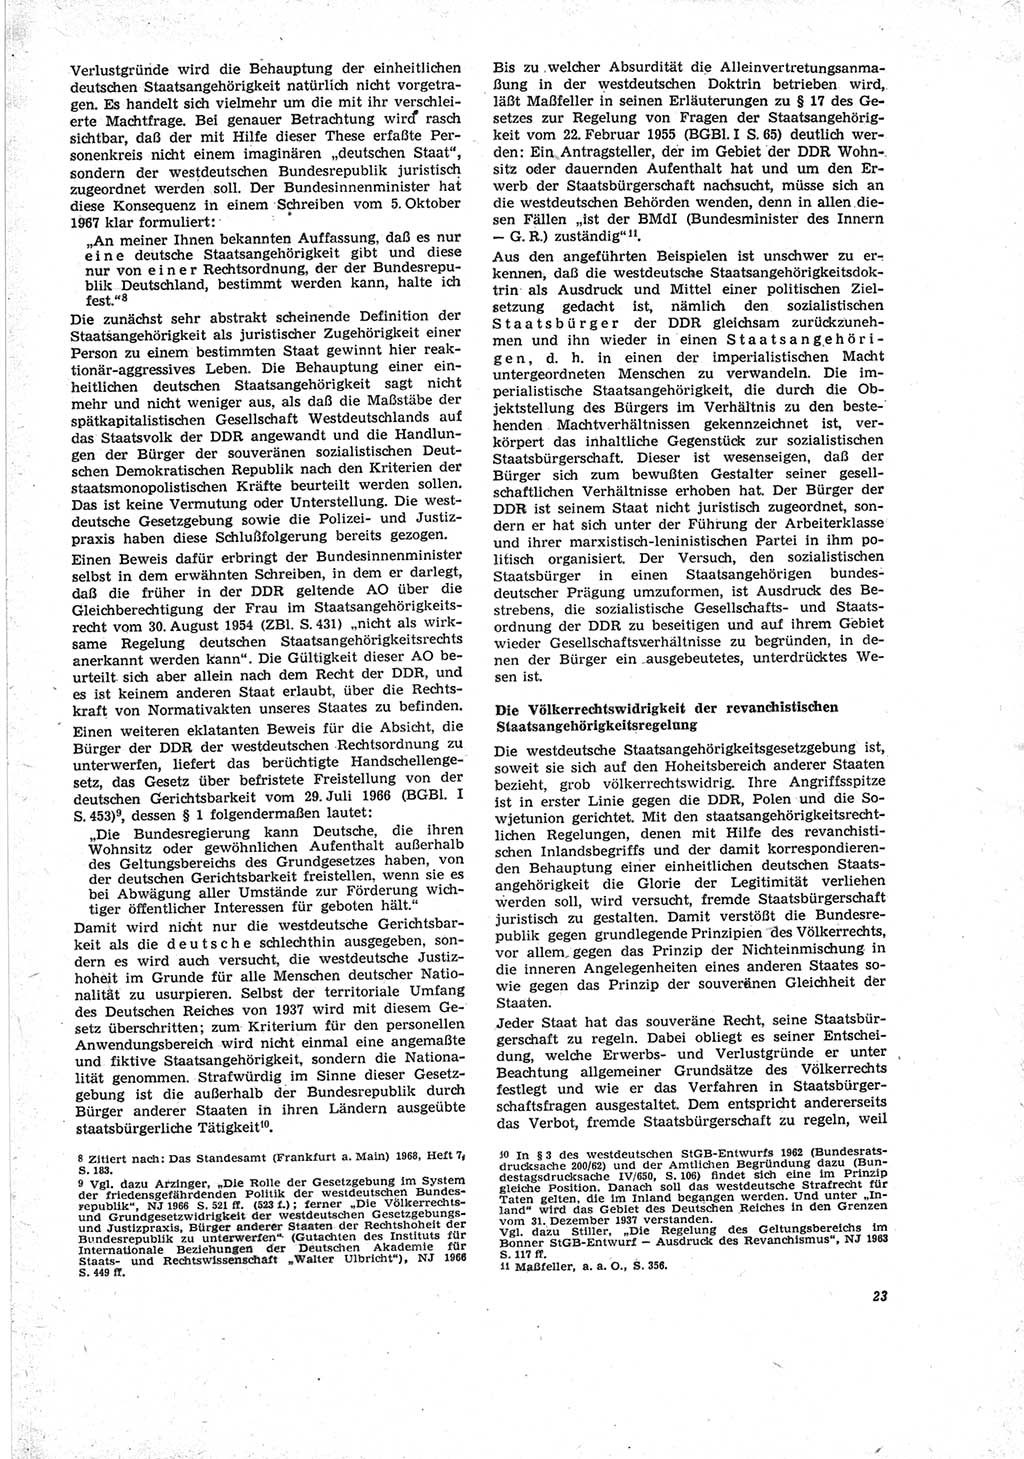 Neue Justiz (NJ), Zeitschrift für Recht und Rechtswissenschaft [Deutsche Demokratische Republik (DDR)], 23. Jahrgang 1969, Seite 23 (NJ DDR 1969, S. 23)